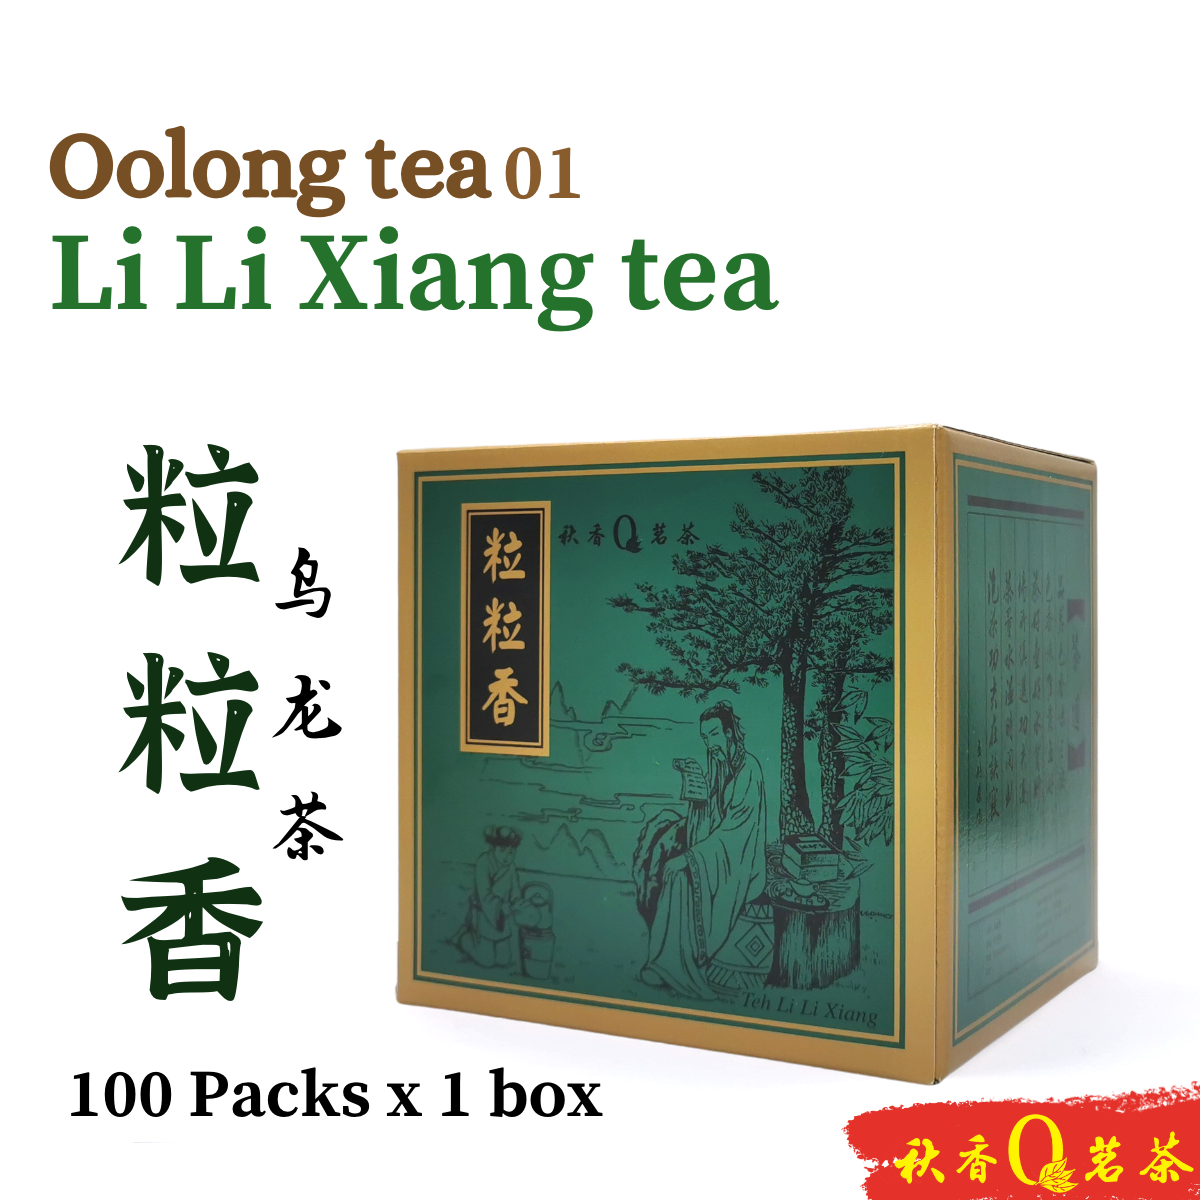 粒粒香 Li Li Xiang tea【100 packs x 8g】|【乌龙茶 Oolong tea 】